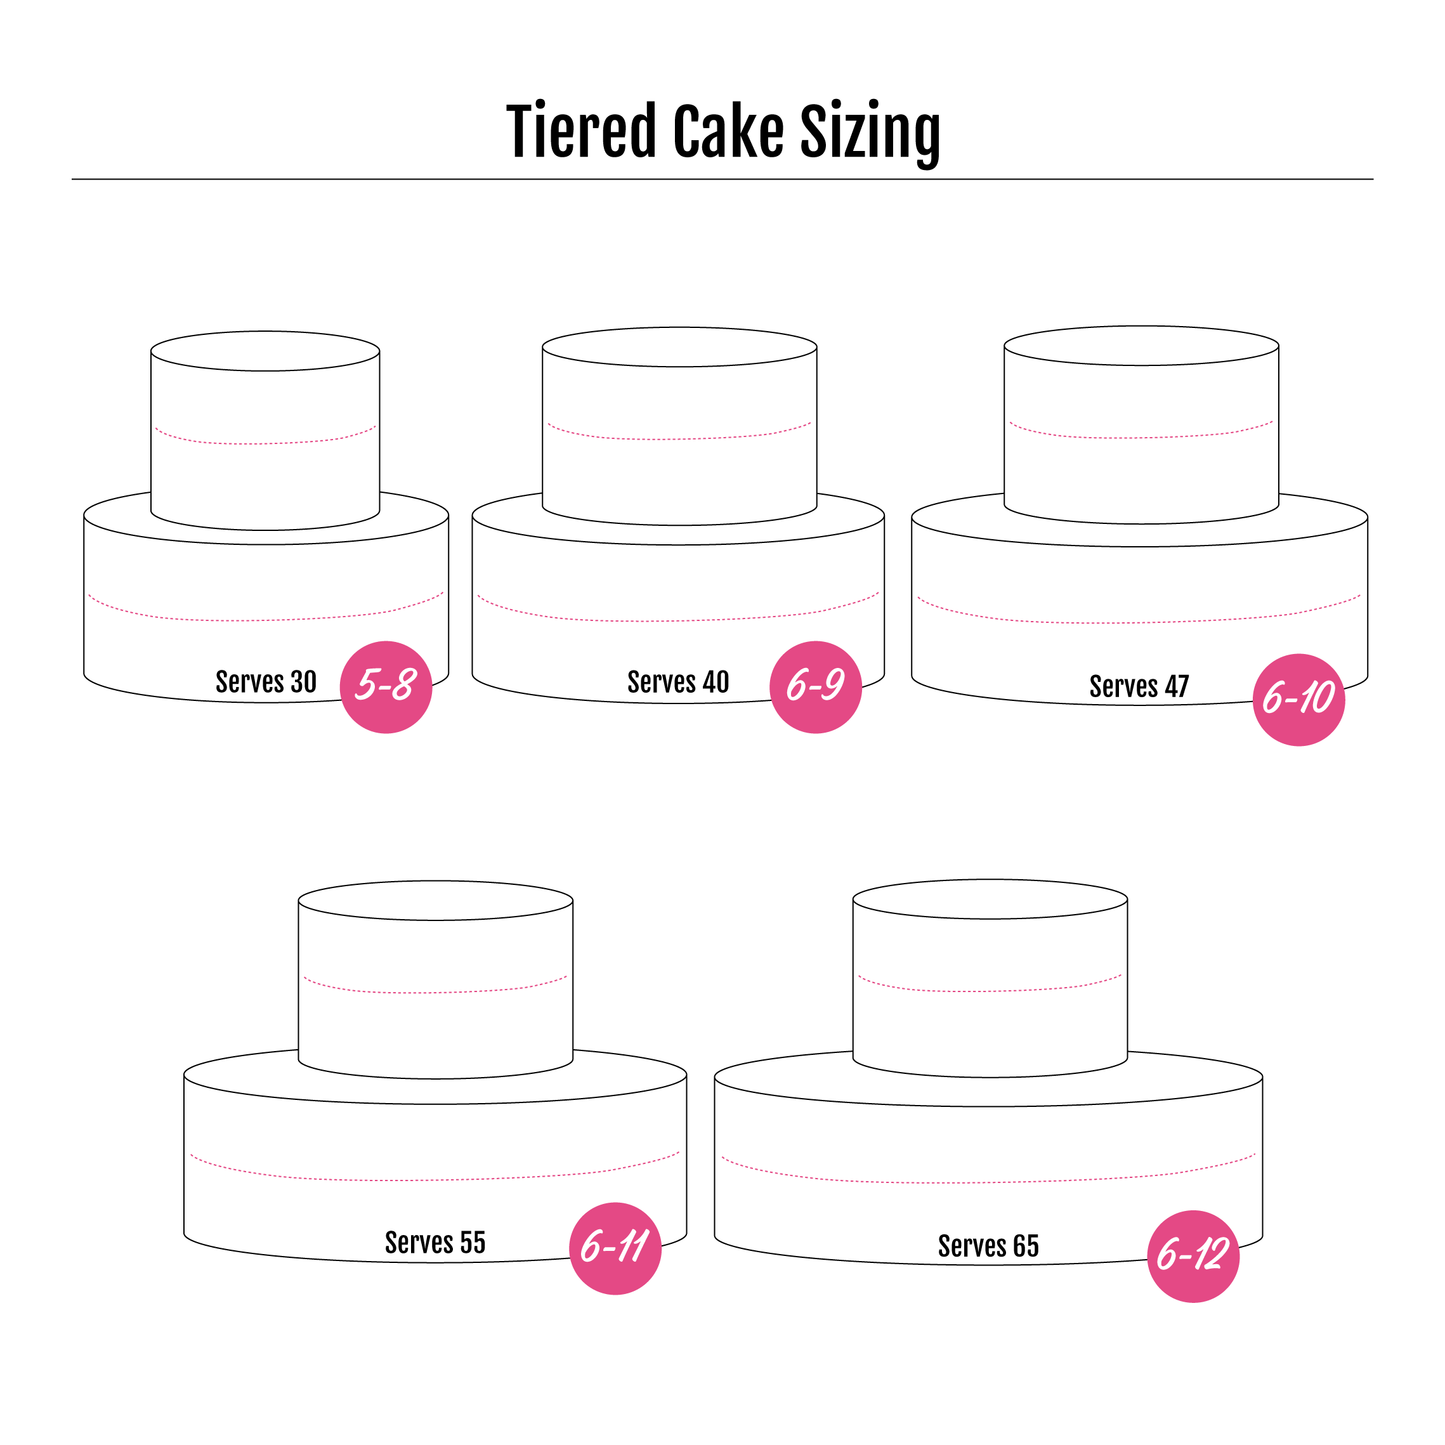 Semi-Naked - 2 Tier Vegan Cake